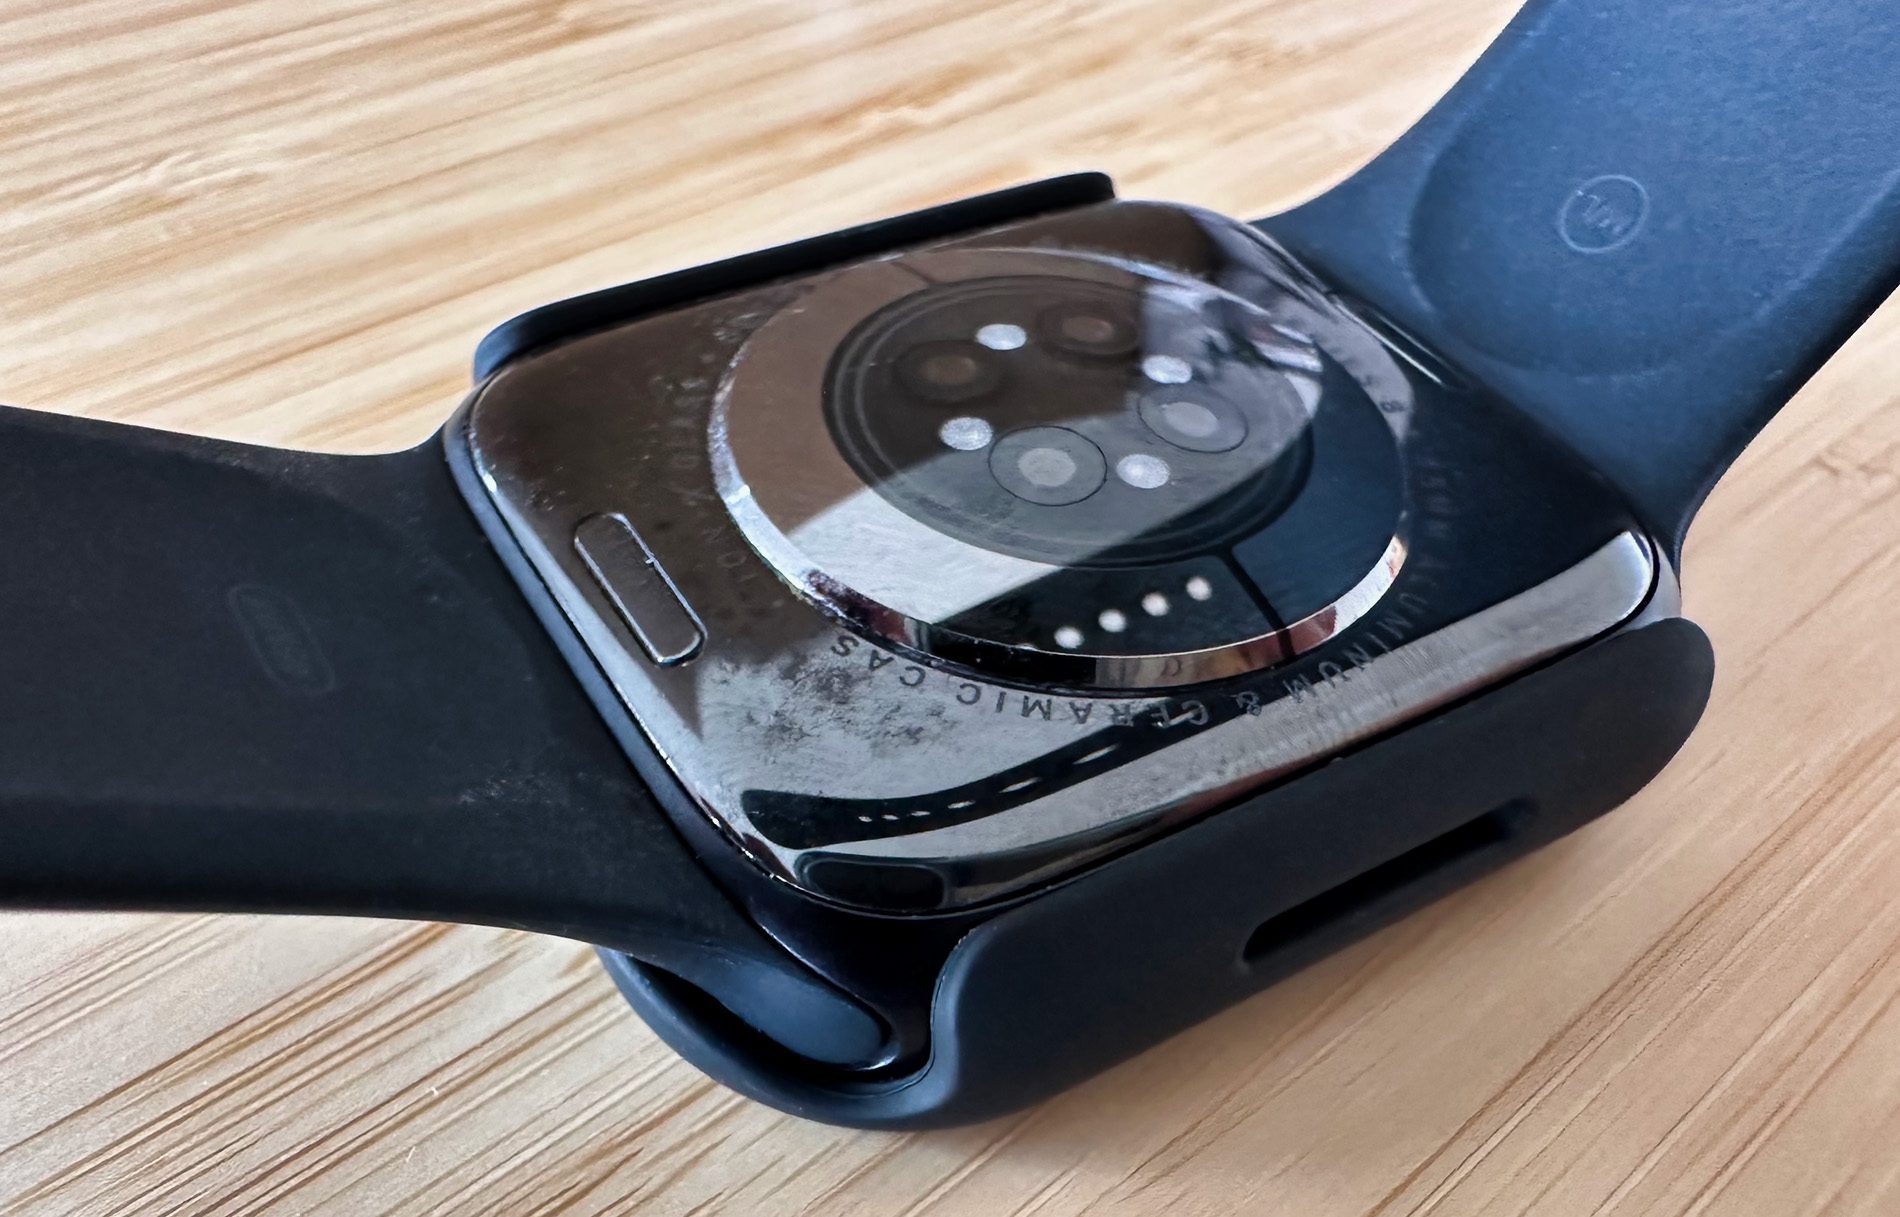 Tutaj możesz zobaczyć spód zegarka Apple Watch z założonym etui.